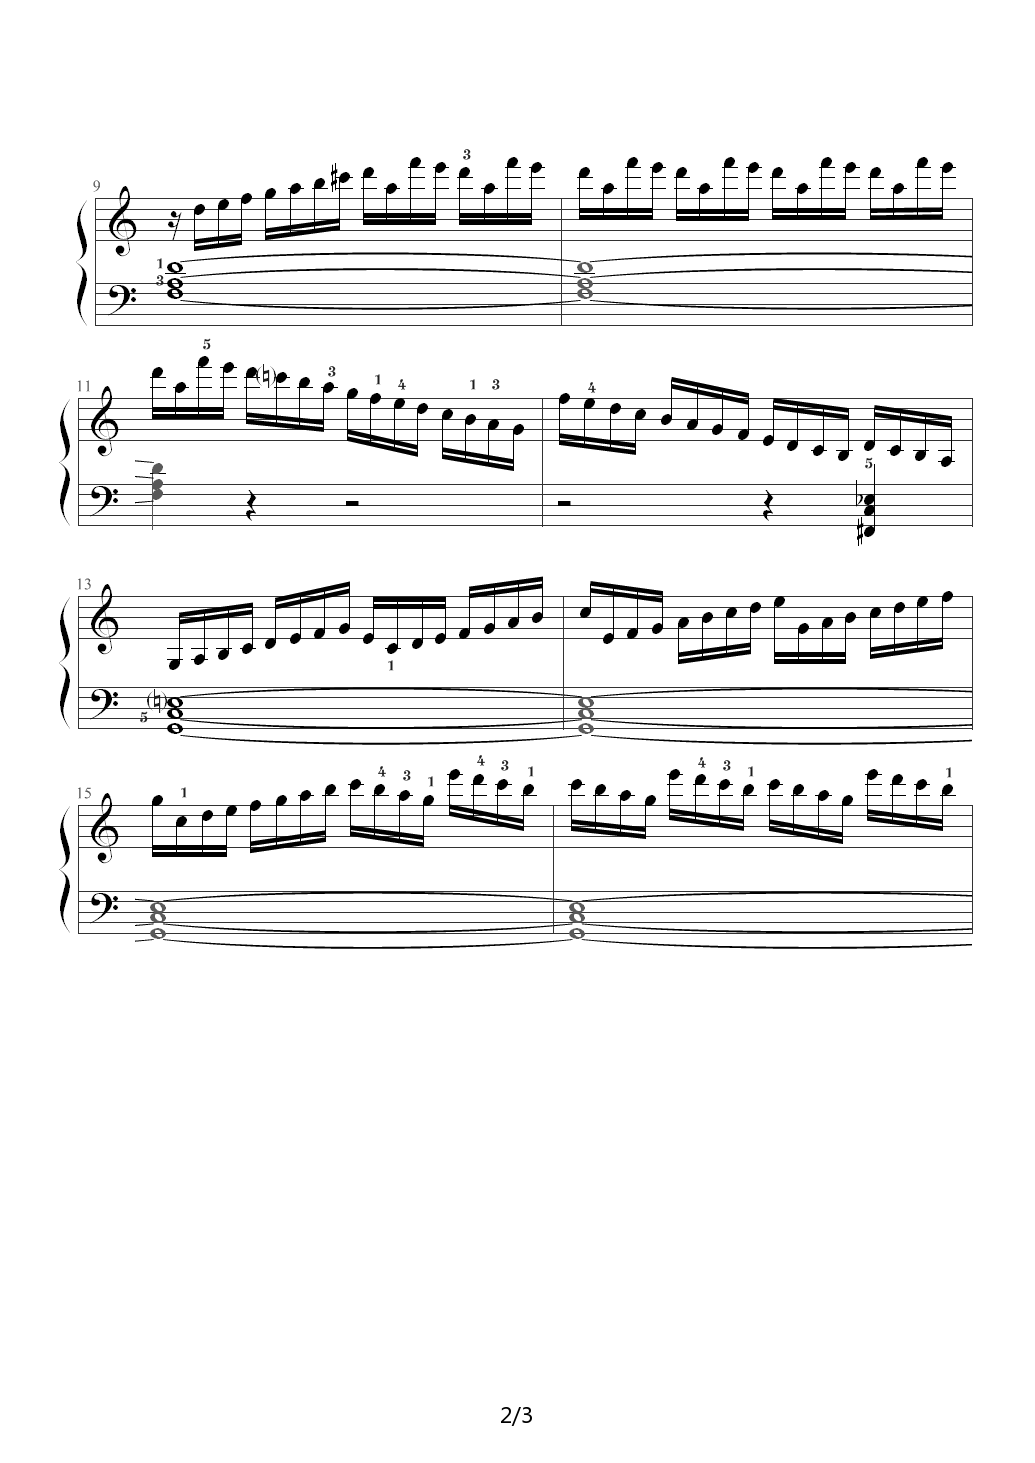 练习曲299钢琴谱|练习曲299最新钢琴谱|练习曲299钢琴谱下载